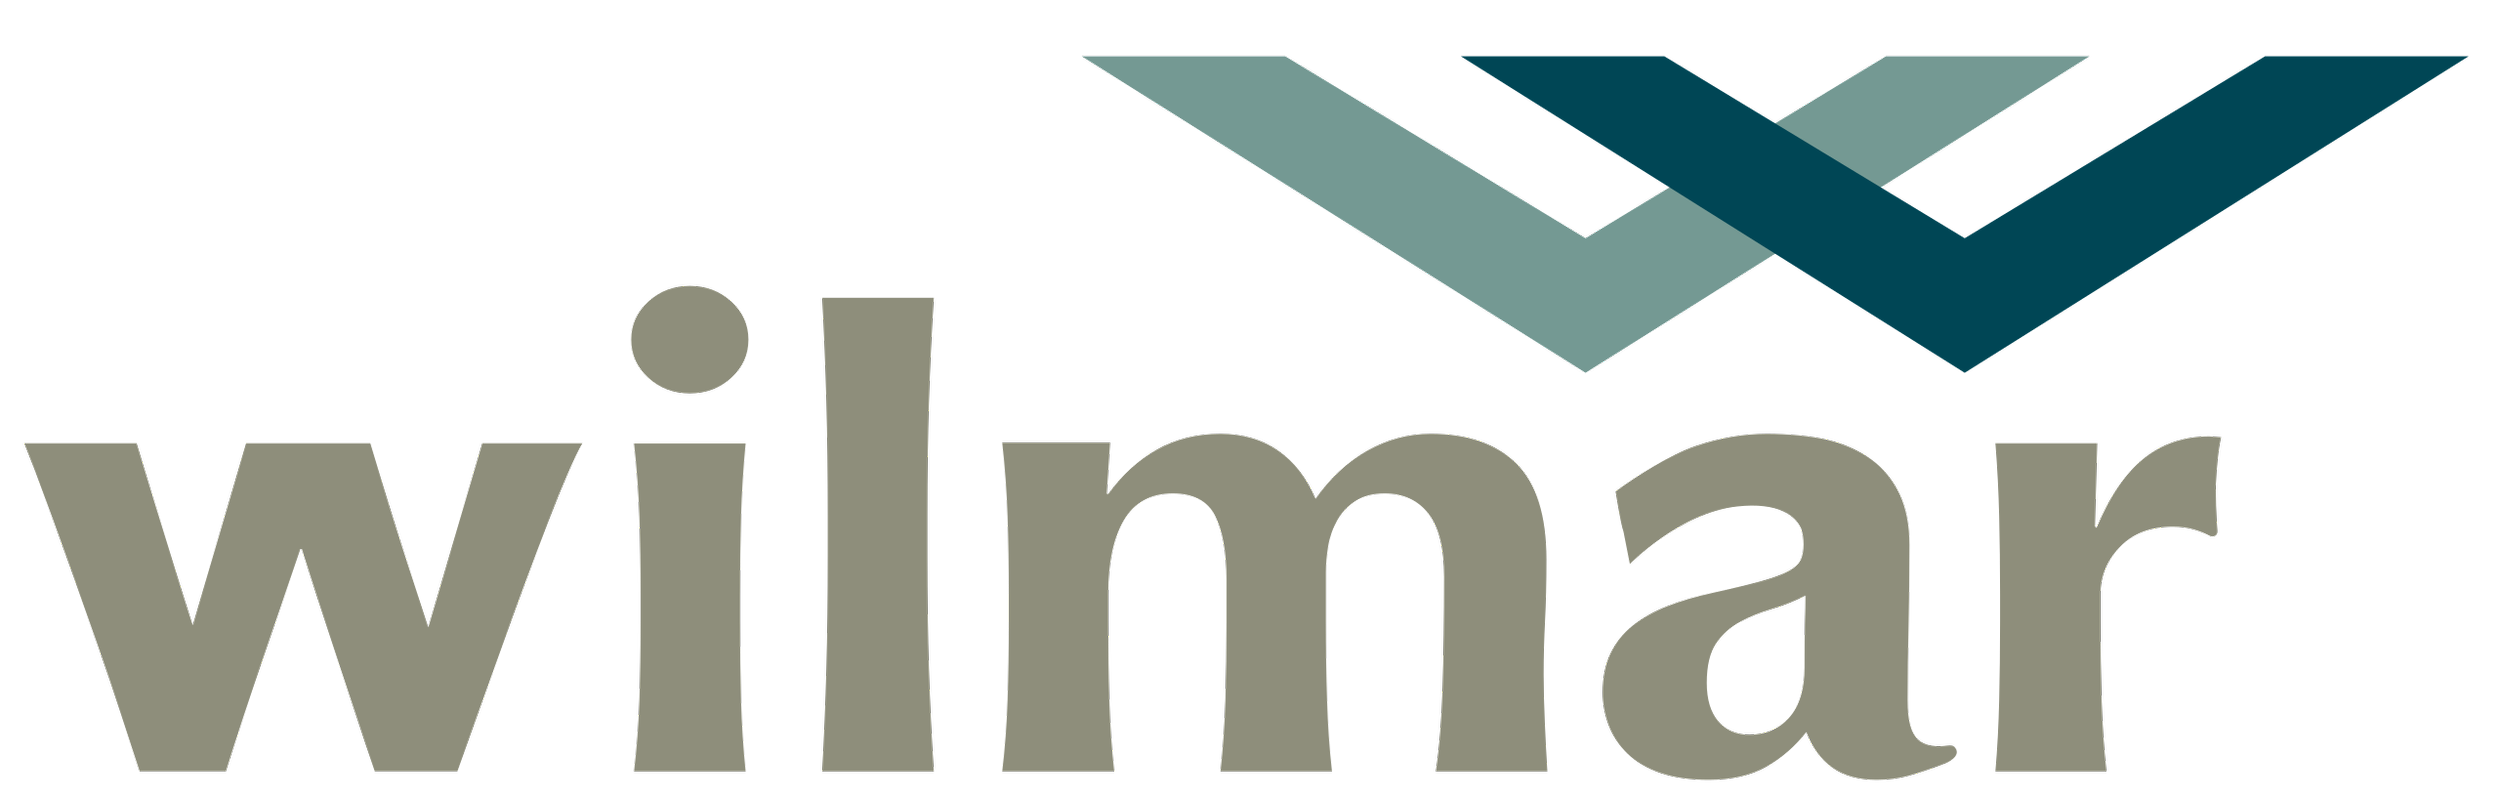 Wilmar logo.png